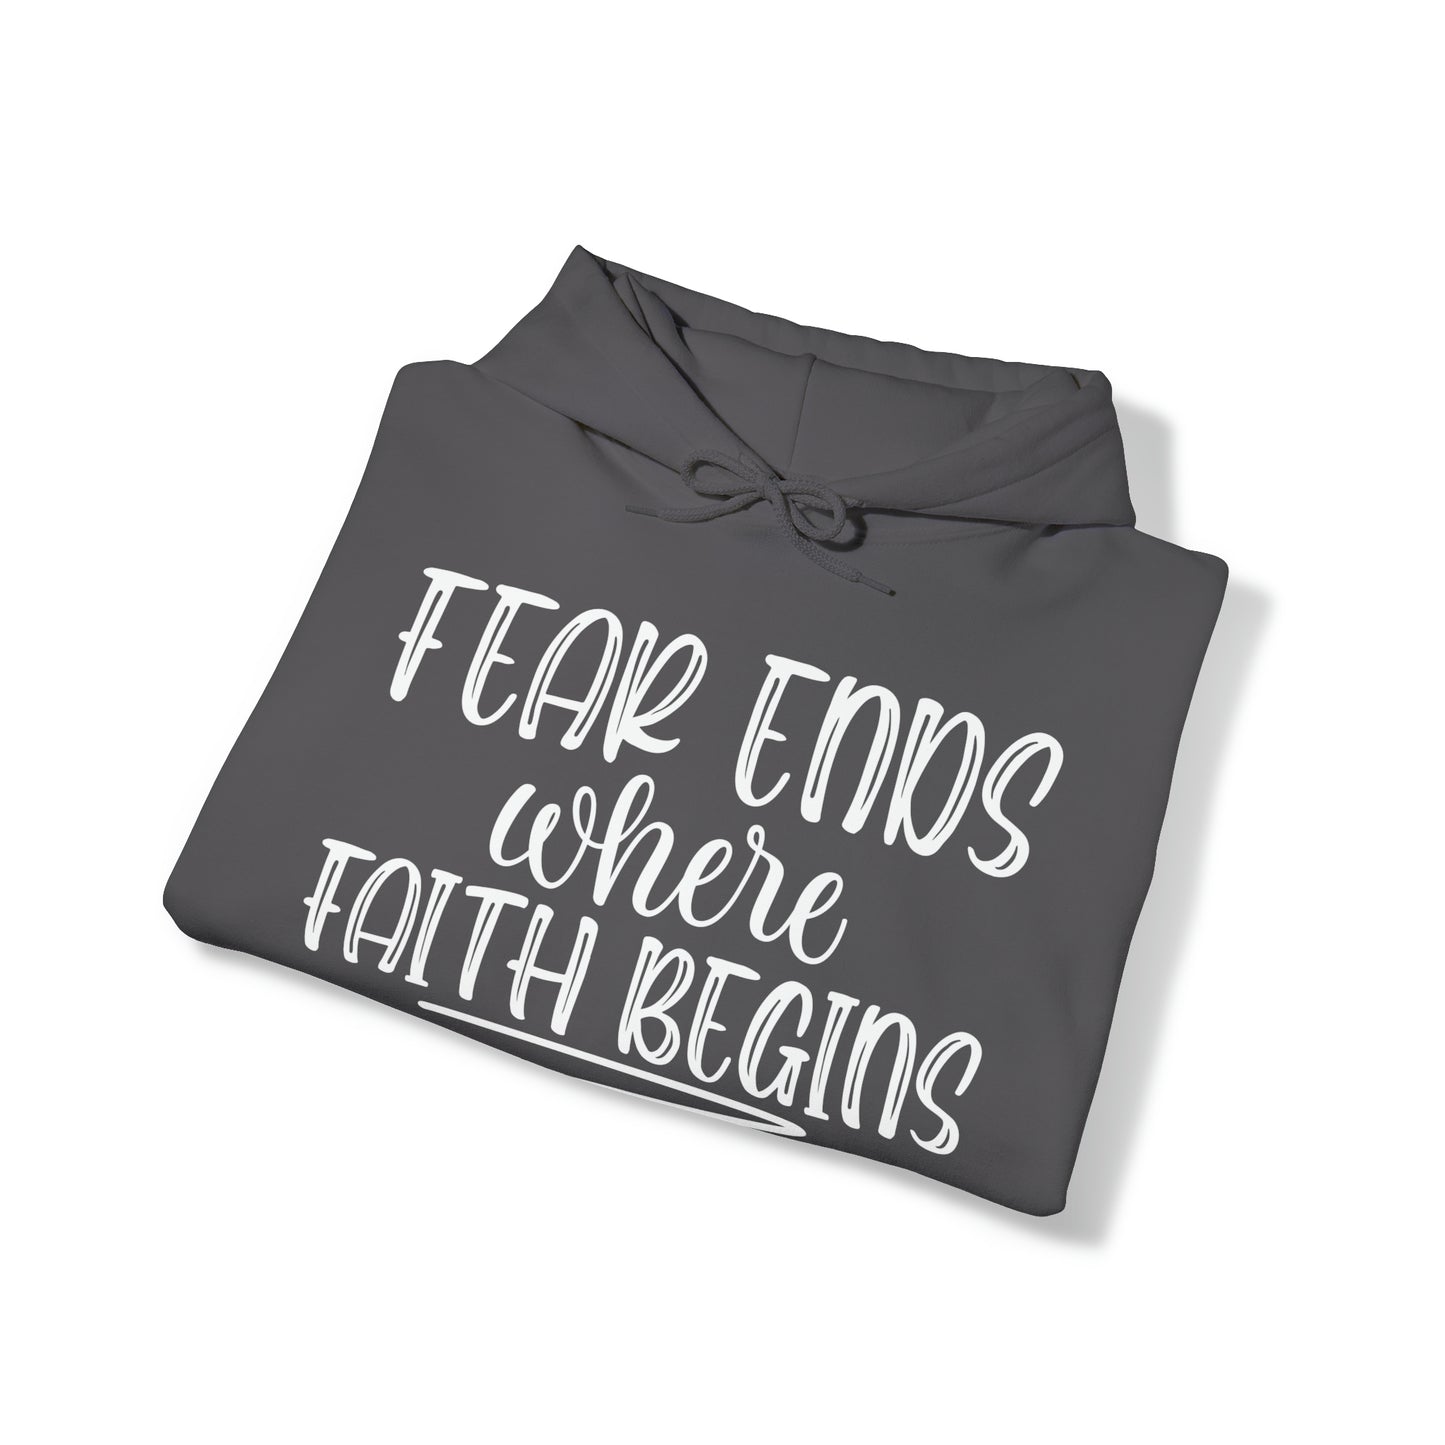 Fear Ends Where Faith Unisex Heavy Blend™ Hooded Sweatshirt